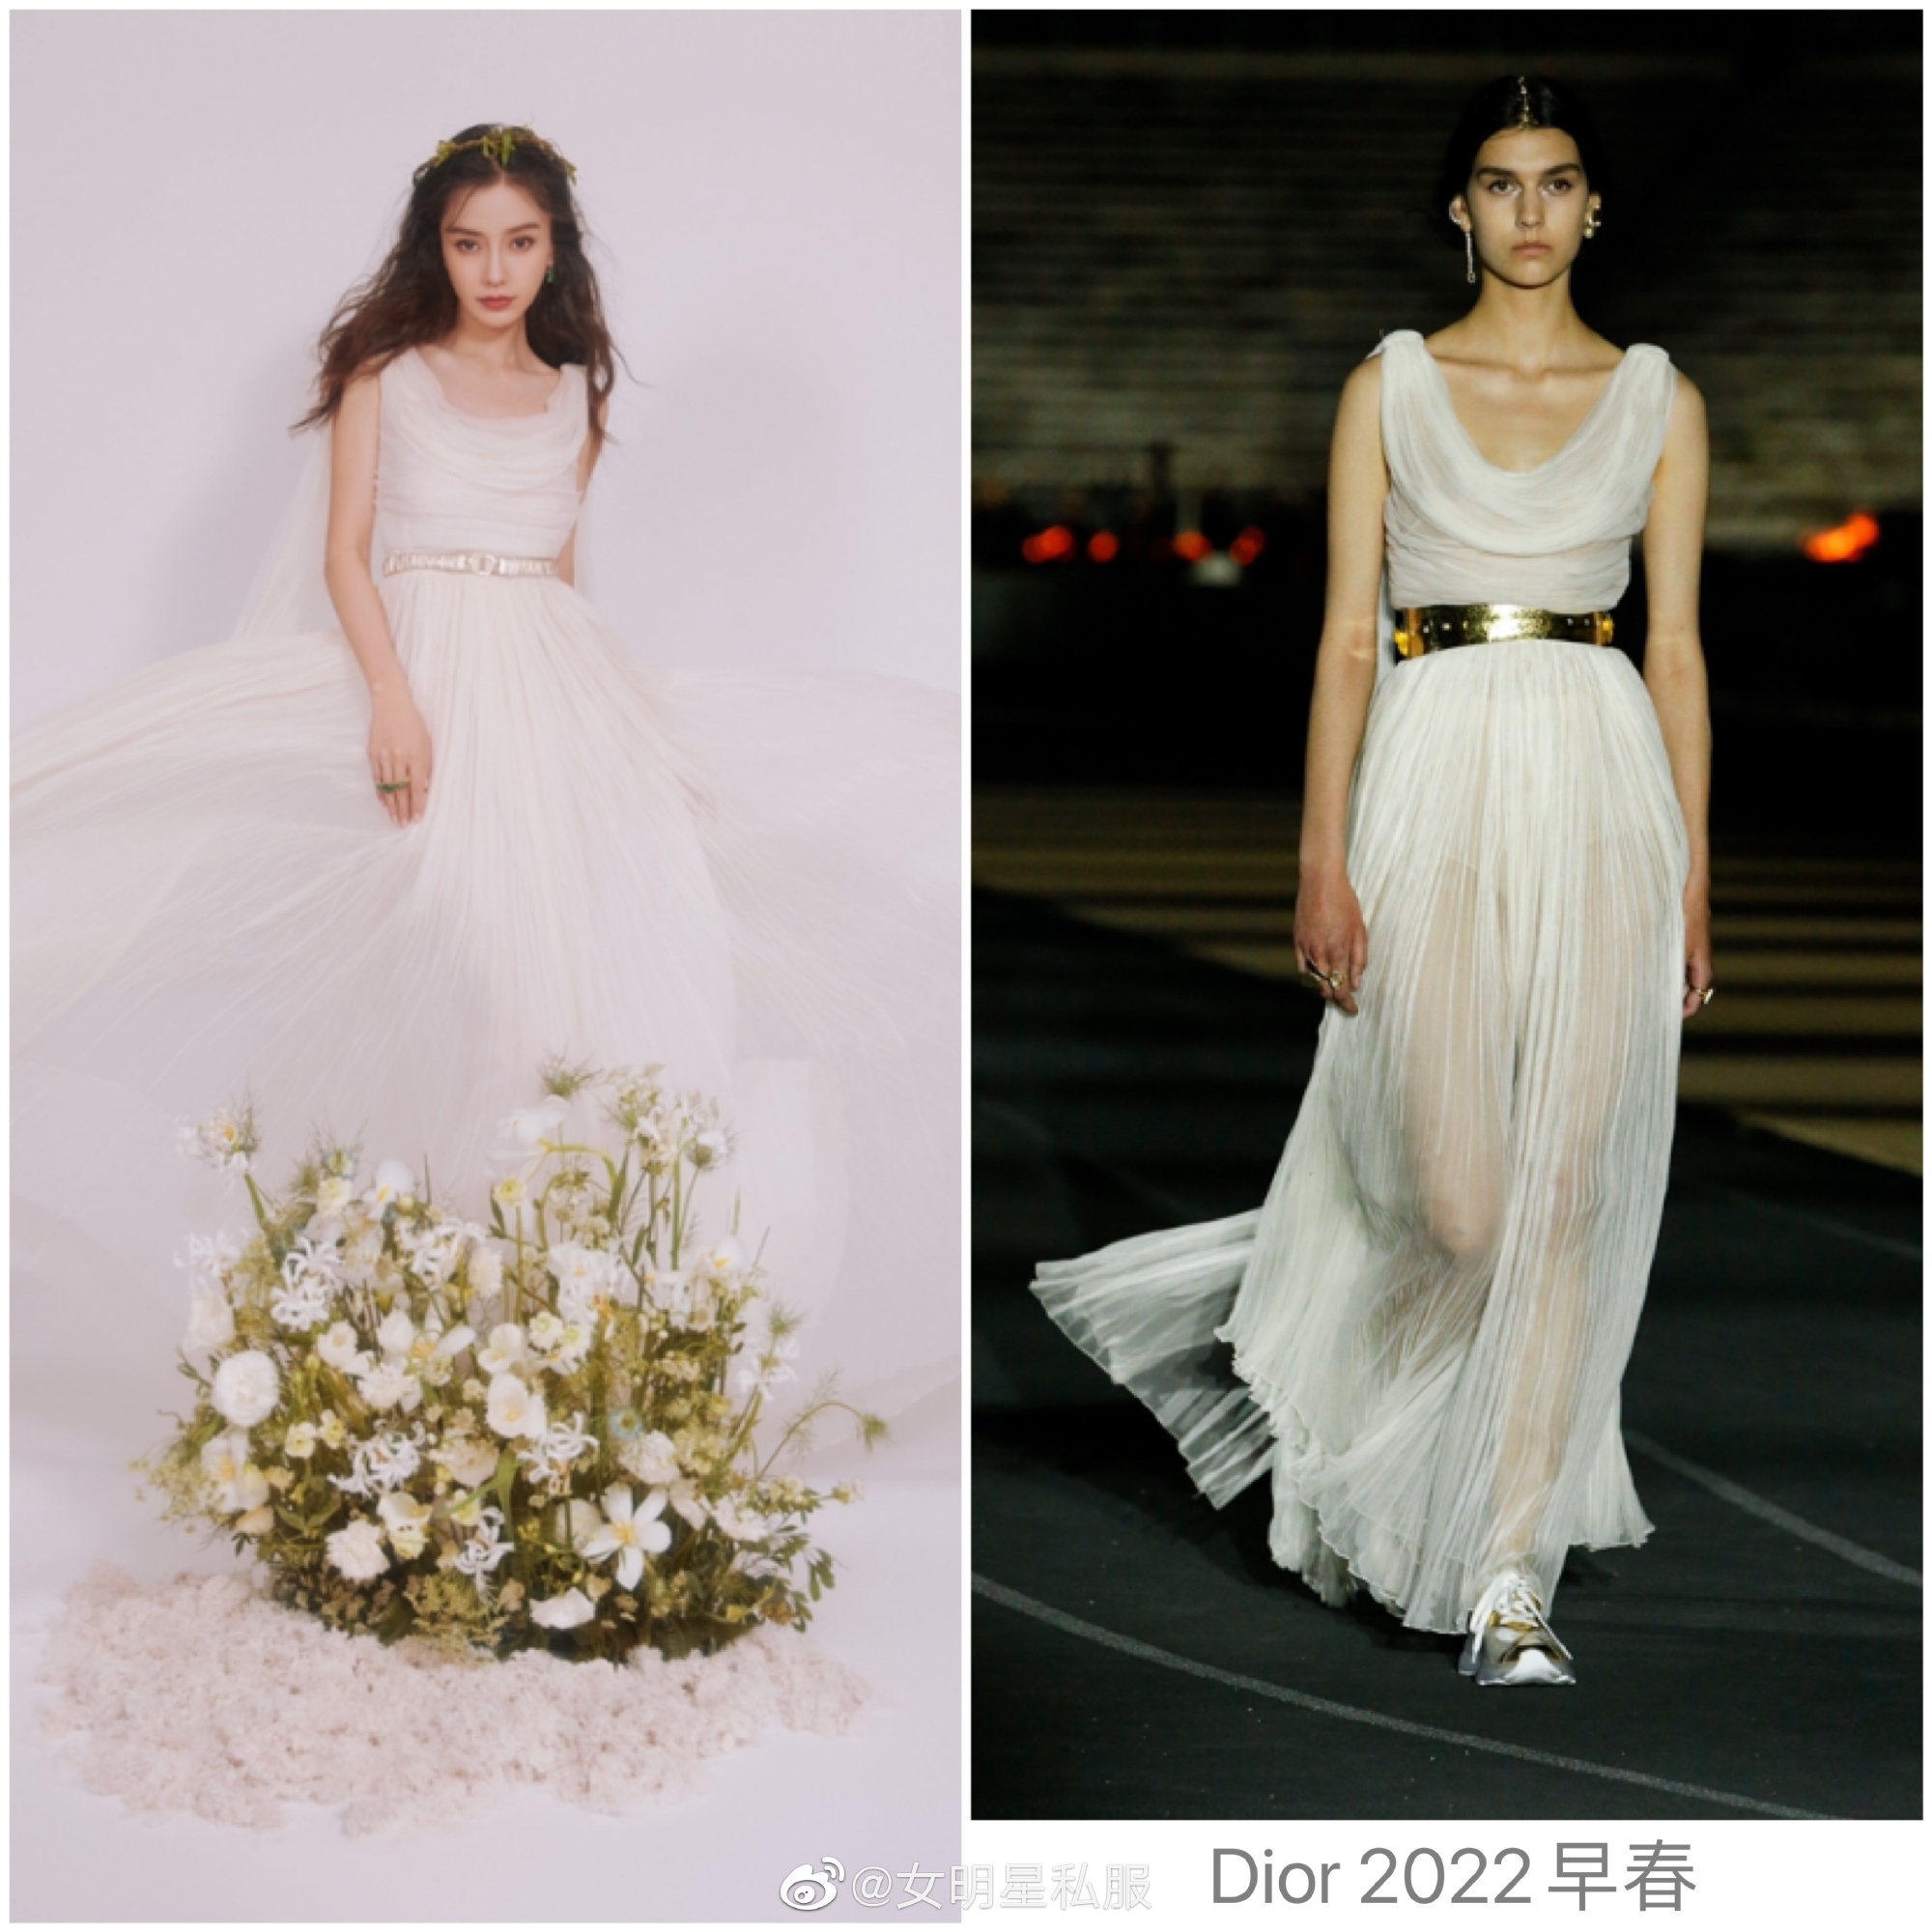 Dàn mỹ nhân Cbiz khoe visual cực phẩm khi diện váy cưới: Lưu Diệc Phi đẹp  như tiên nữ